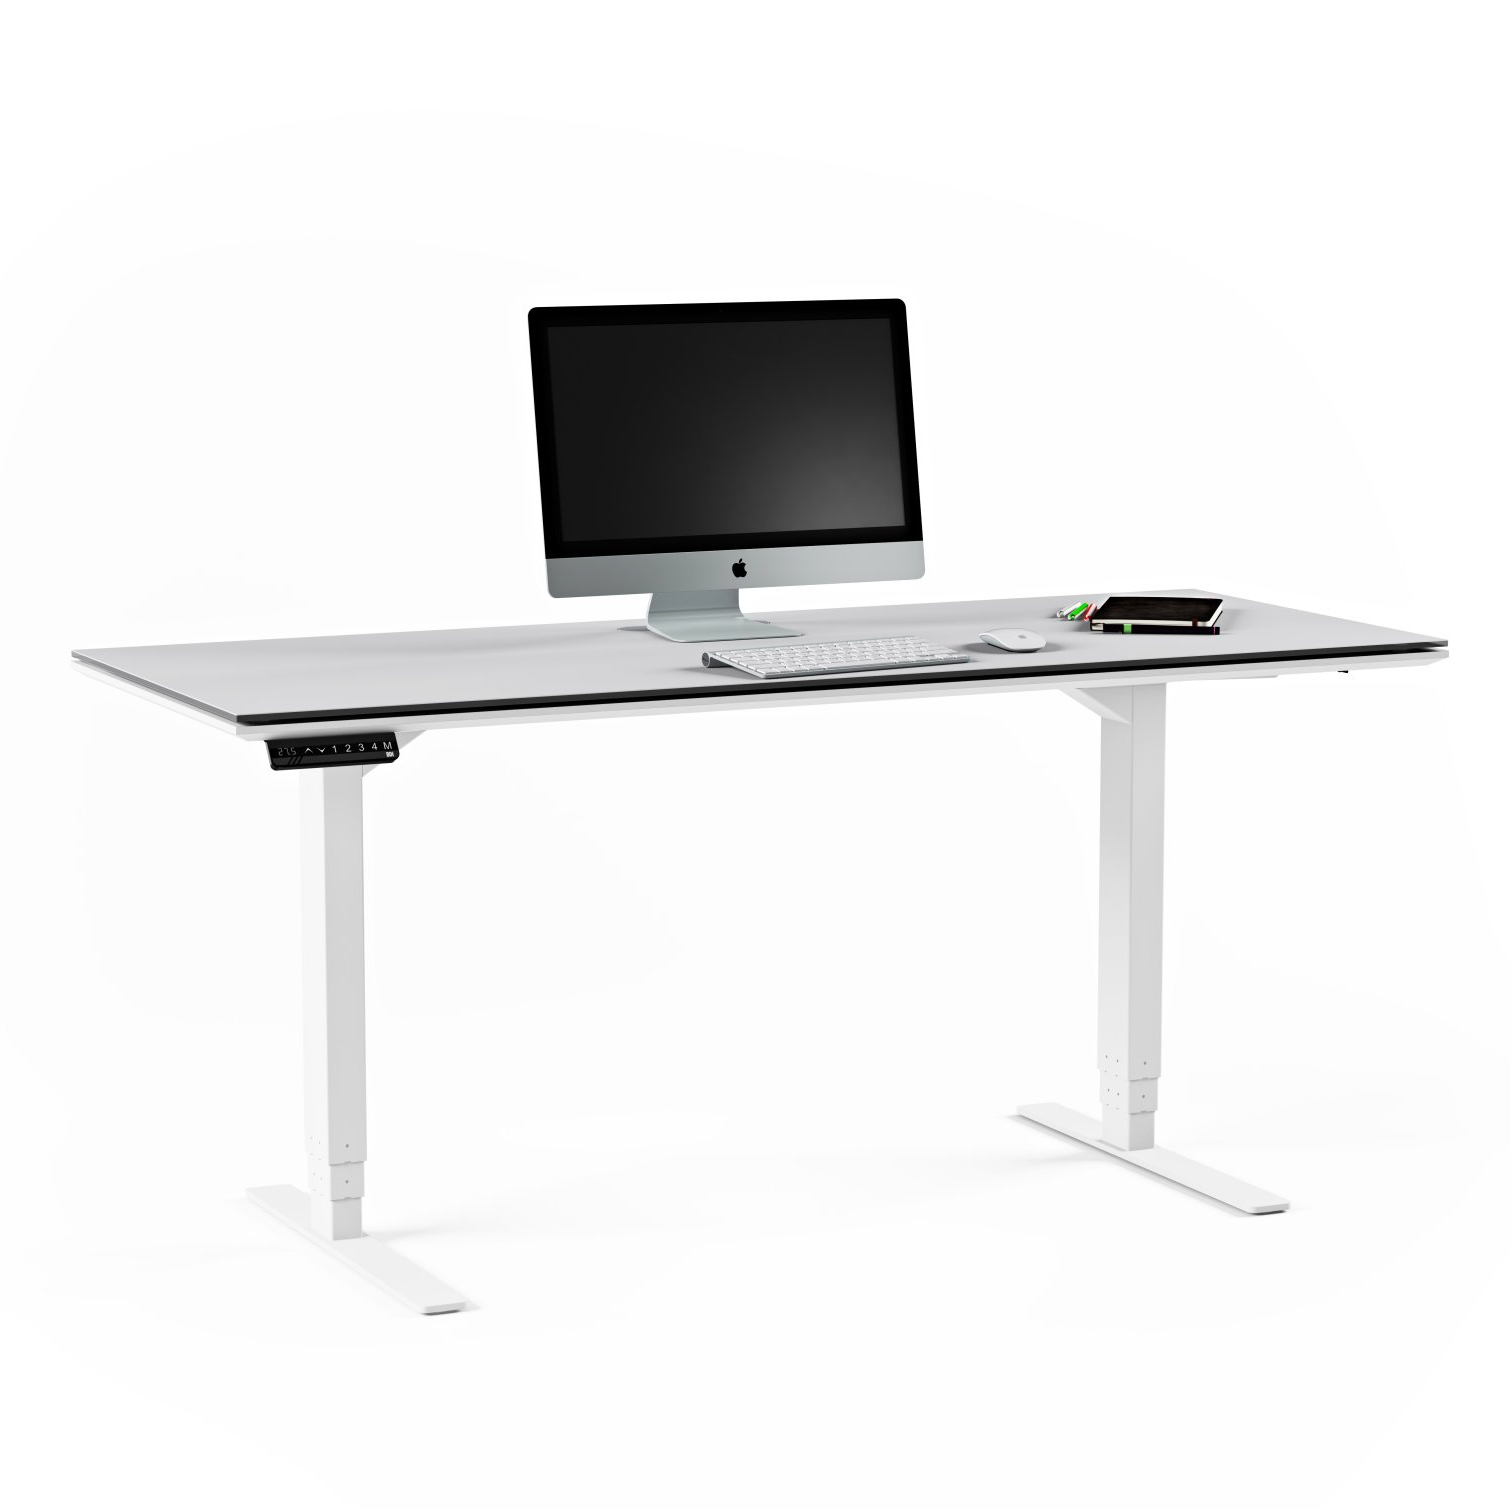 6451 Height Adjustable Standing Desk